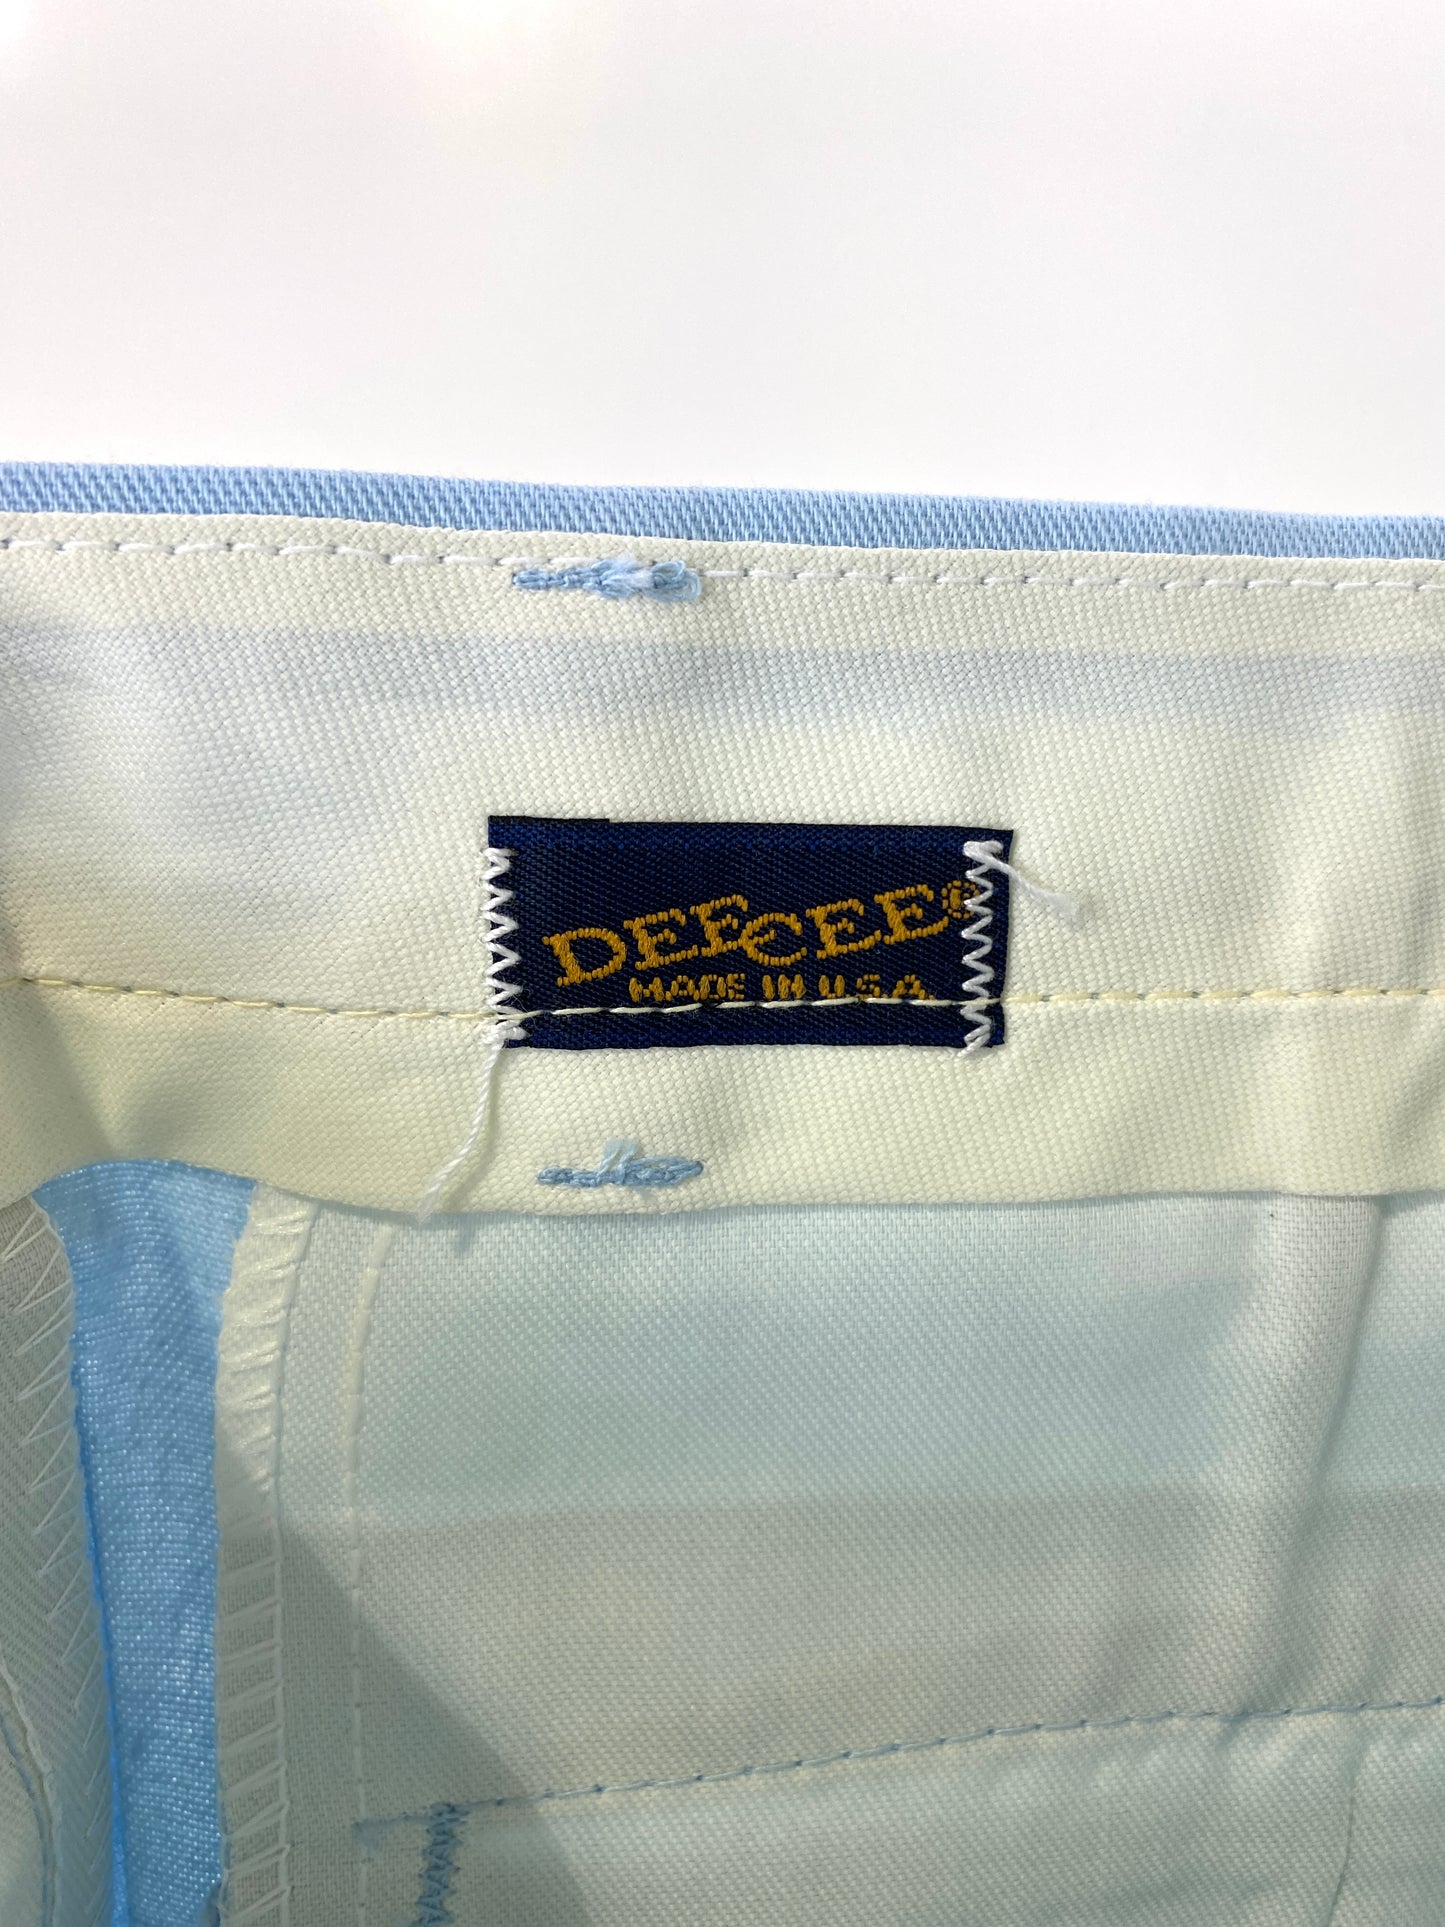 Vintage 1970s Deadstock Straight-Leg Polycotton Trousers, Men's Blue 'Dee Cee' Slacks, NOS